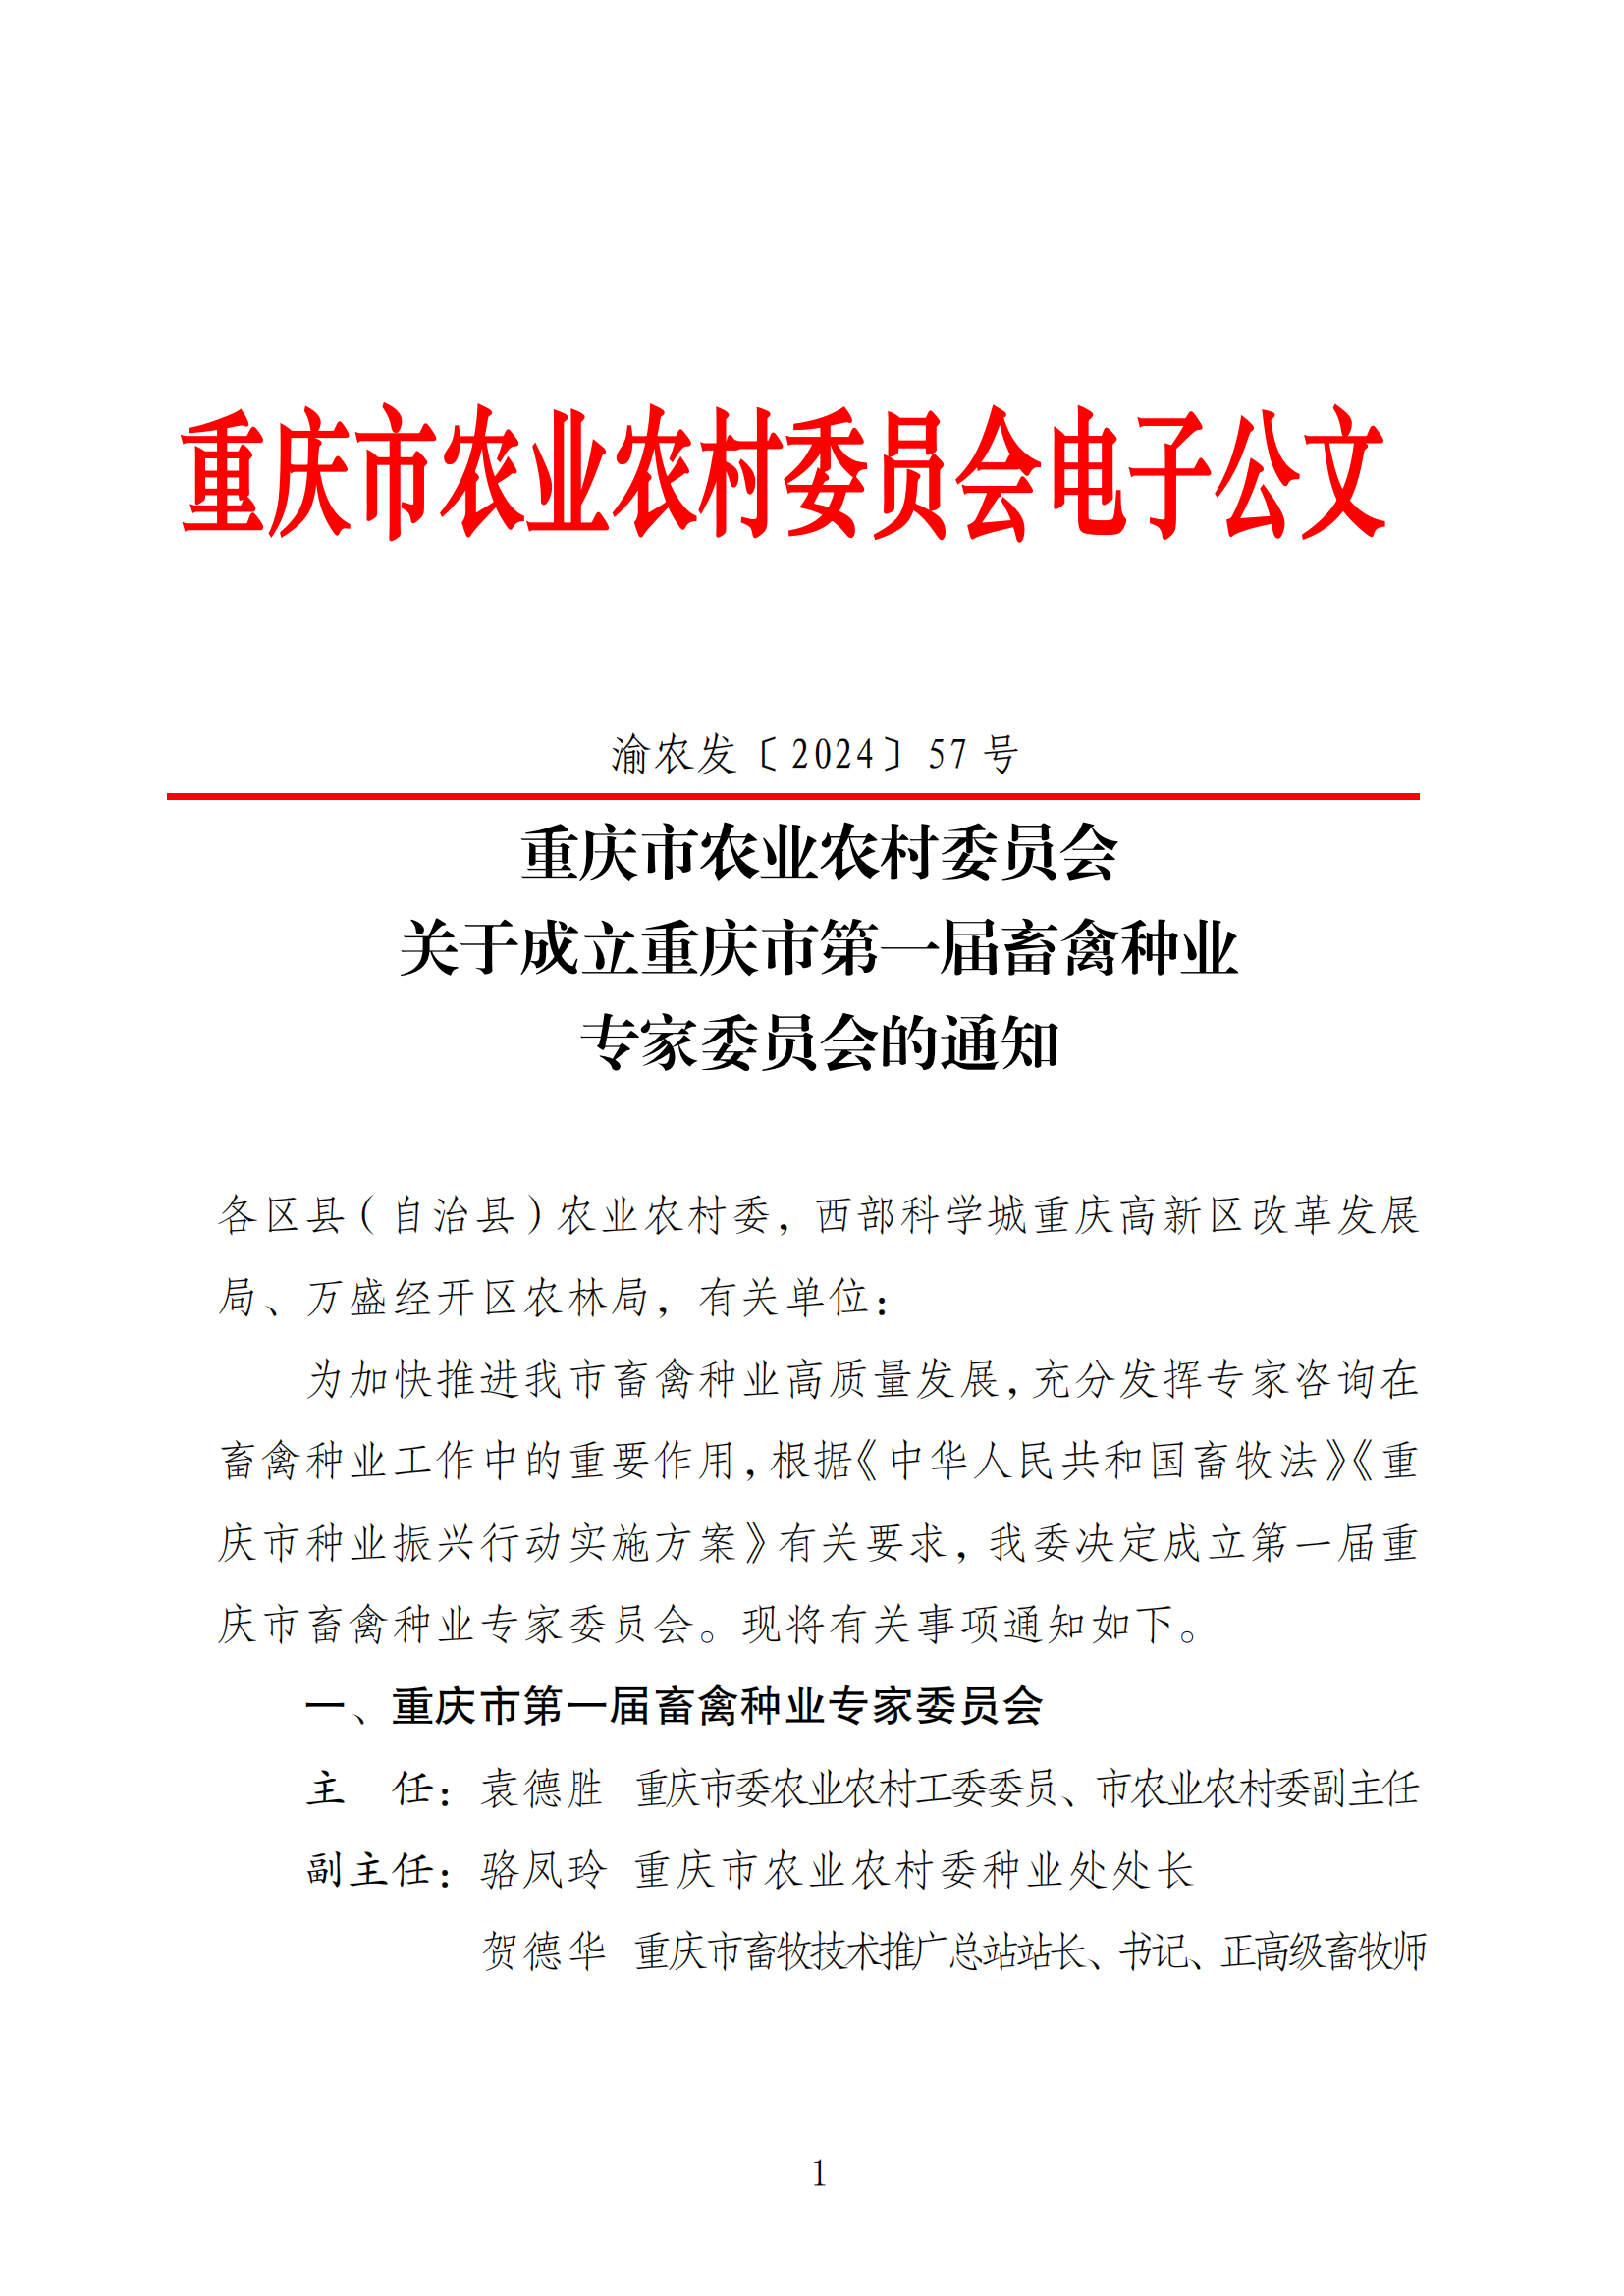 热烈祝贺蒲强入选重庆市猪专业委员会成员